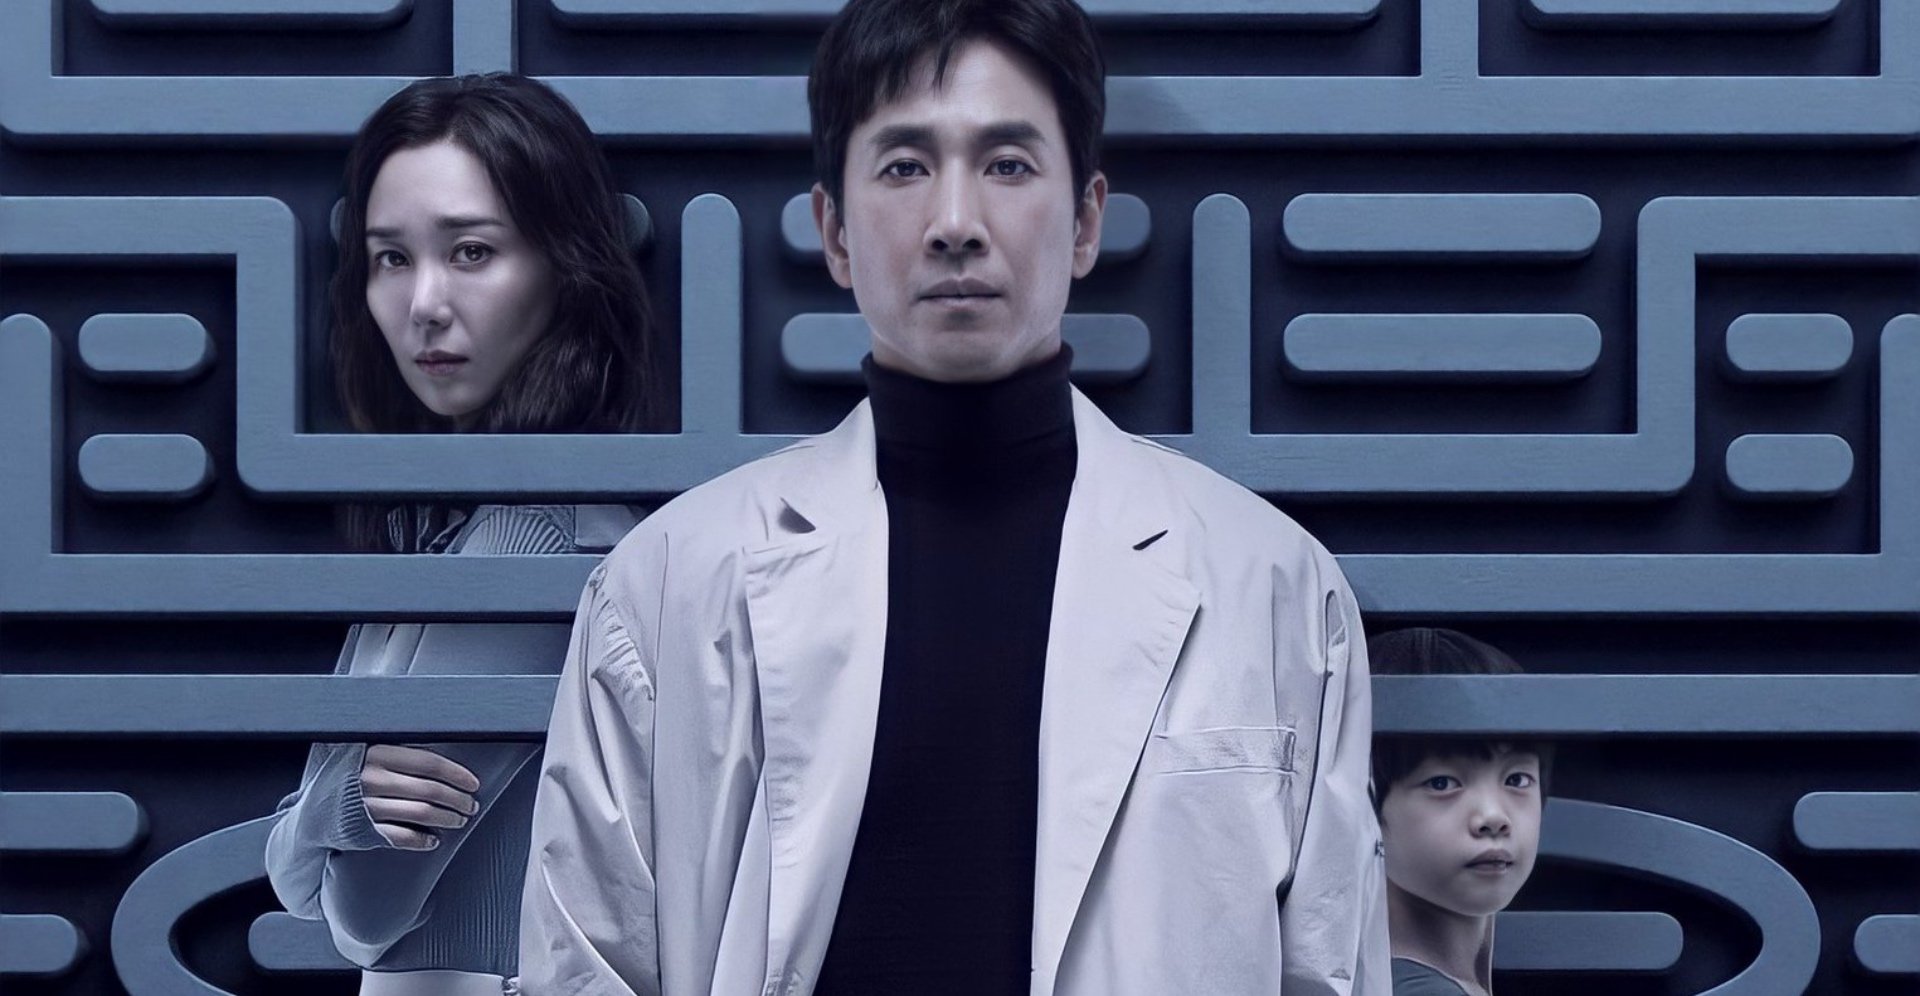 Lee Sun-kyun for 'Dr. Brain' K-drama wearing white lab coat